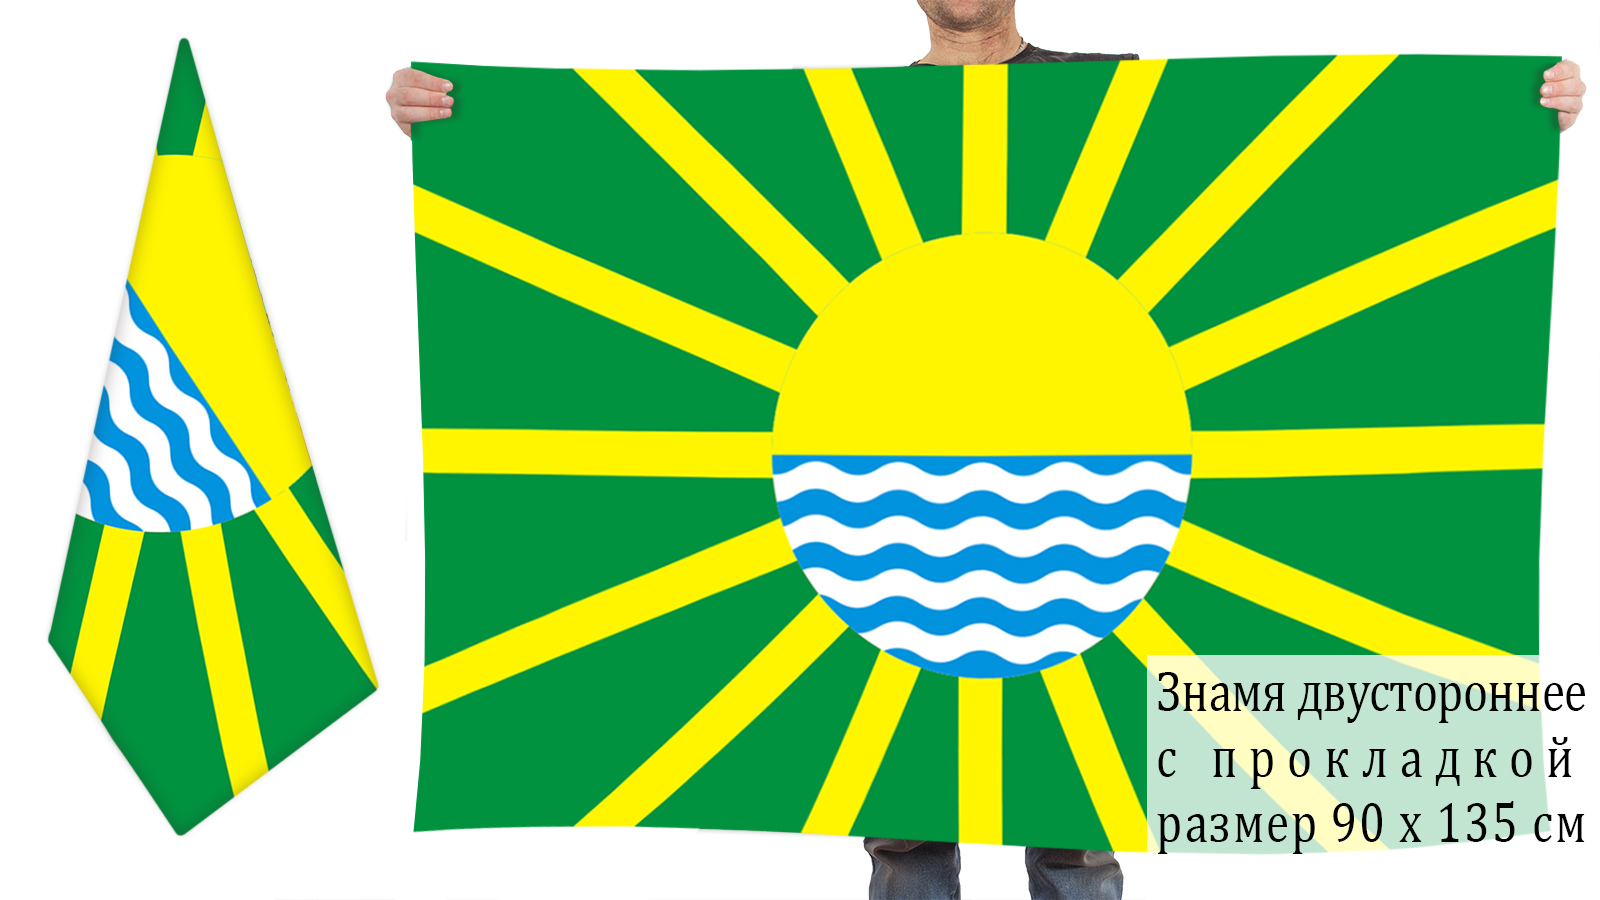 Двусторонний флаг города Яровое